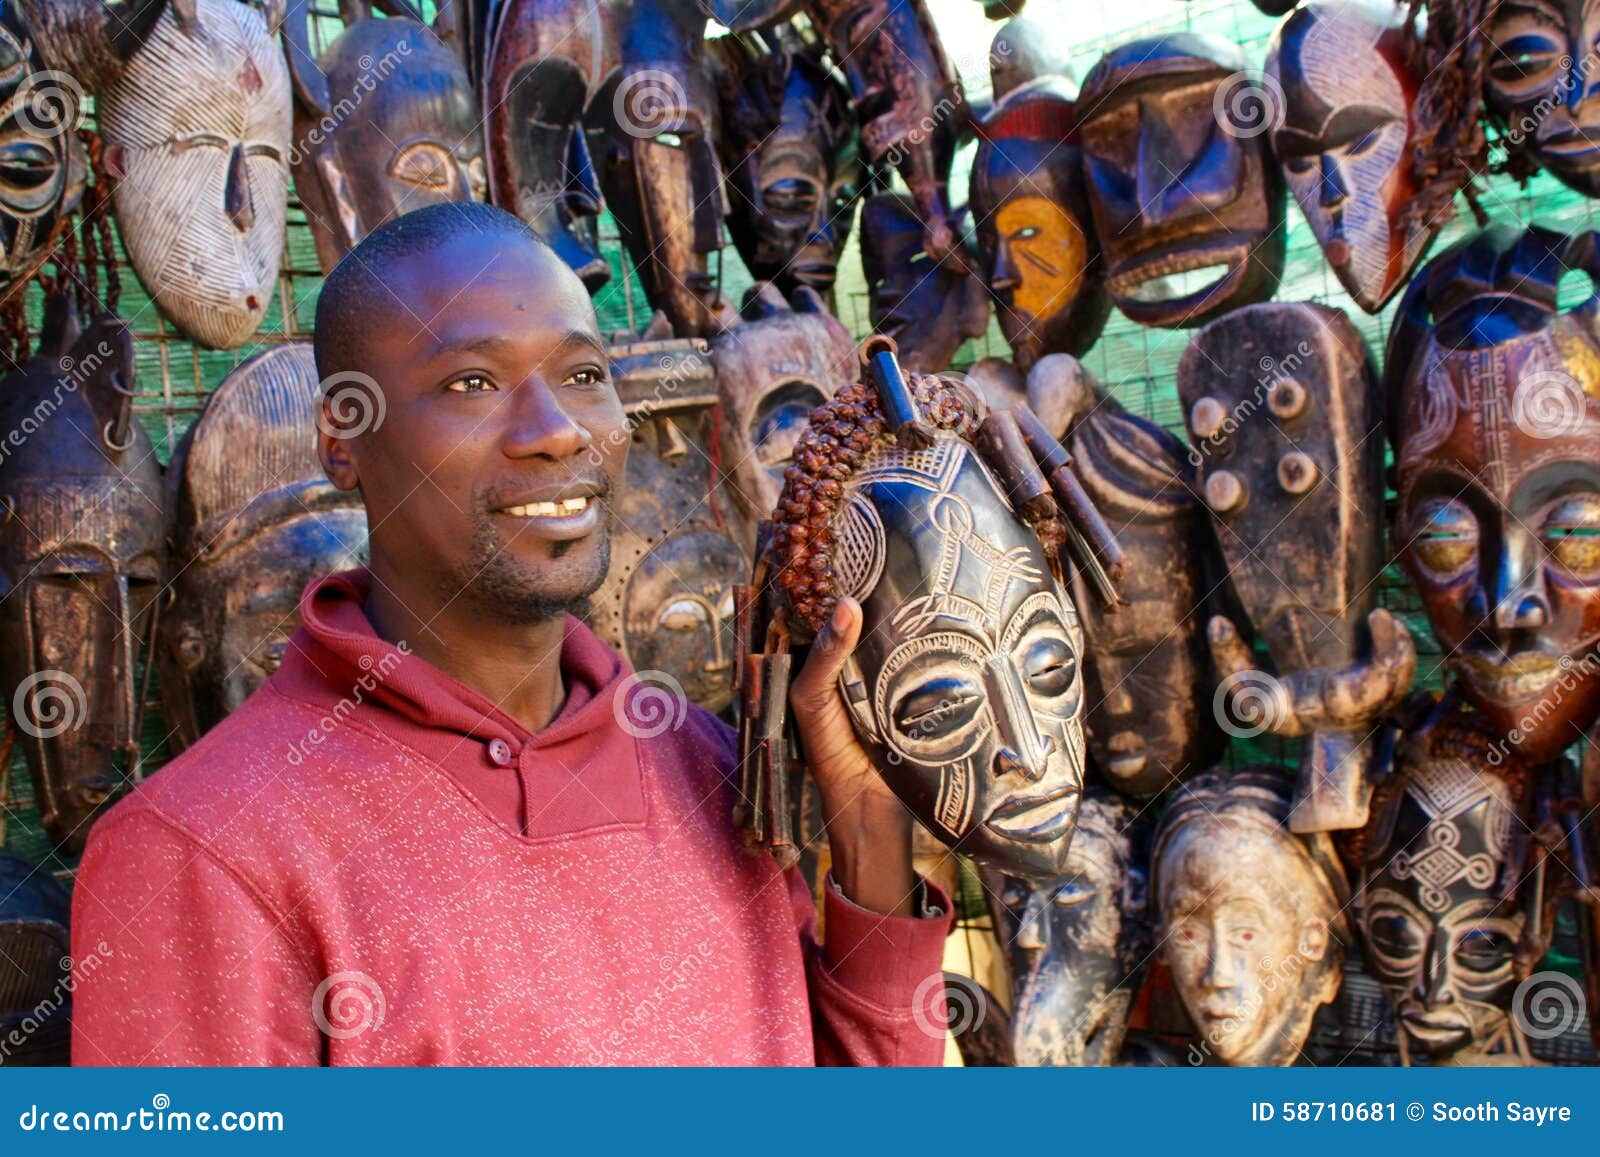 Targowy mężczyzna z maskami. Czarnego Afrykanina mężczyzna ono uśmiecha się wśród plemiennych rzeźb i odzieży przy Greenmarket, Kapsztad, Południowa Afryka